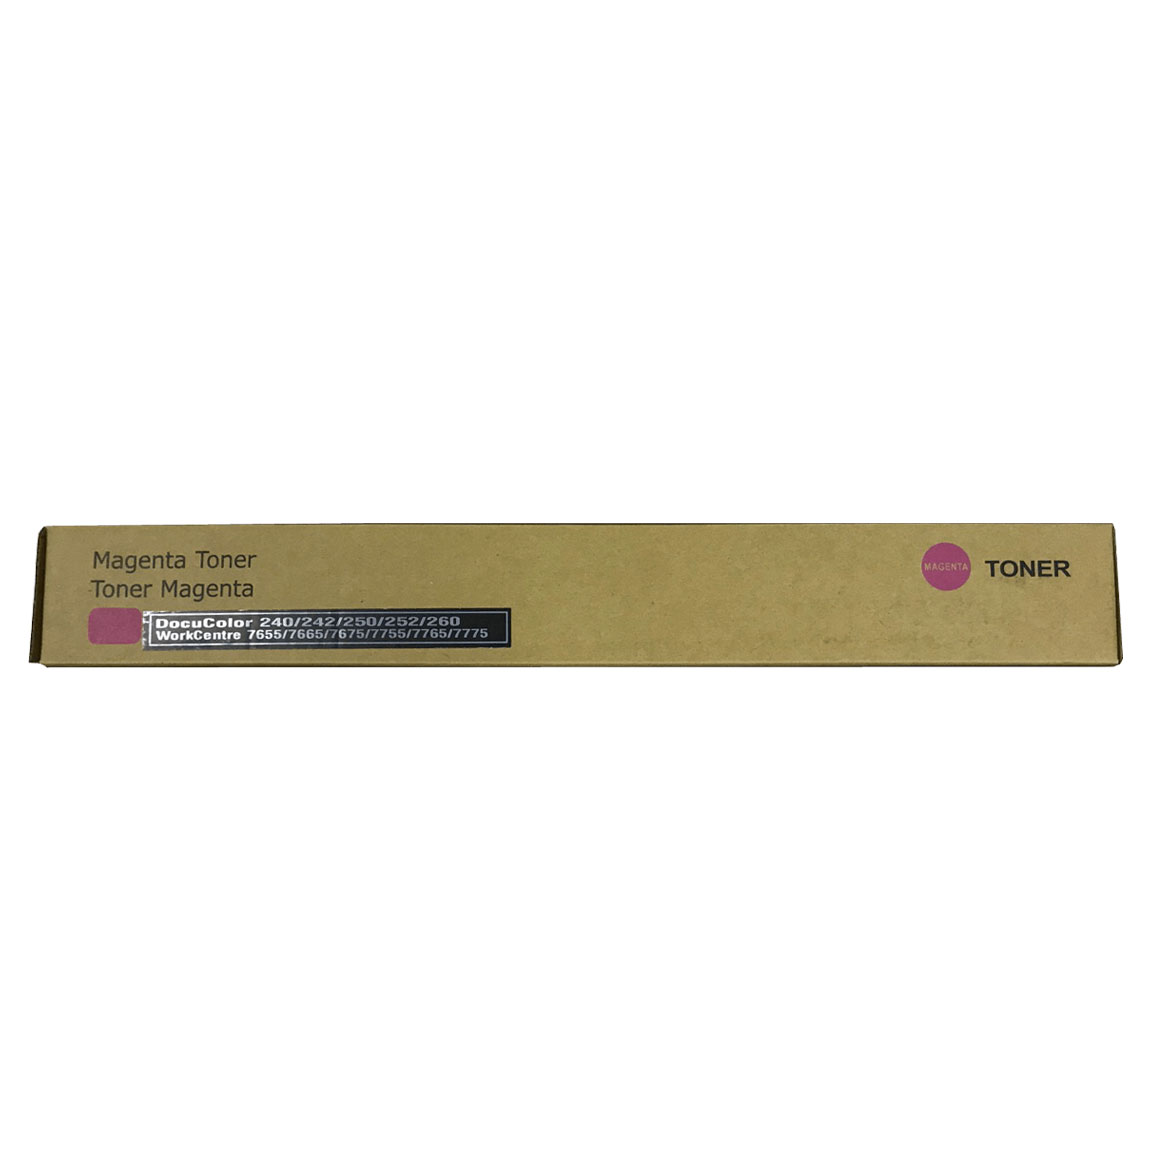 Тонер картридж красный (Magenta) для XEROX DC 240/ 242/ 250/ 252/ 260 (006R01451, 006R01225). Фото №2